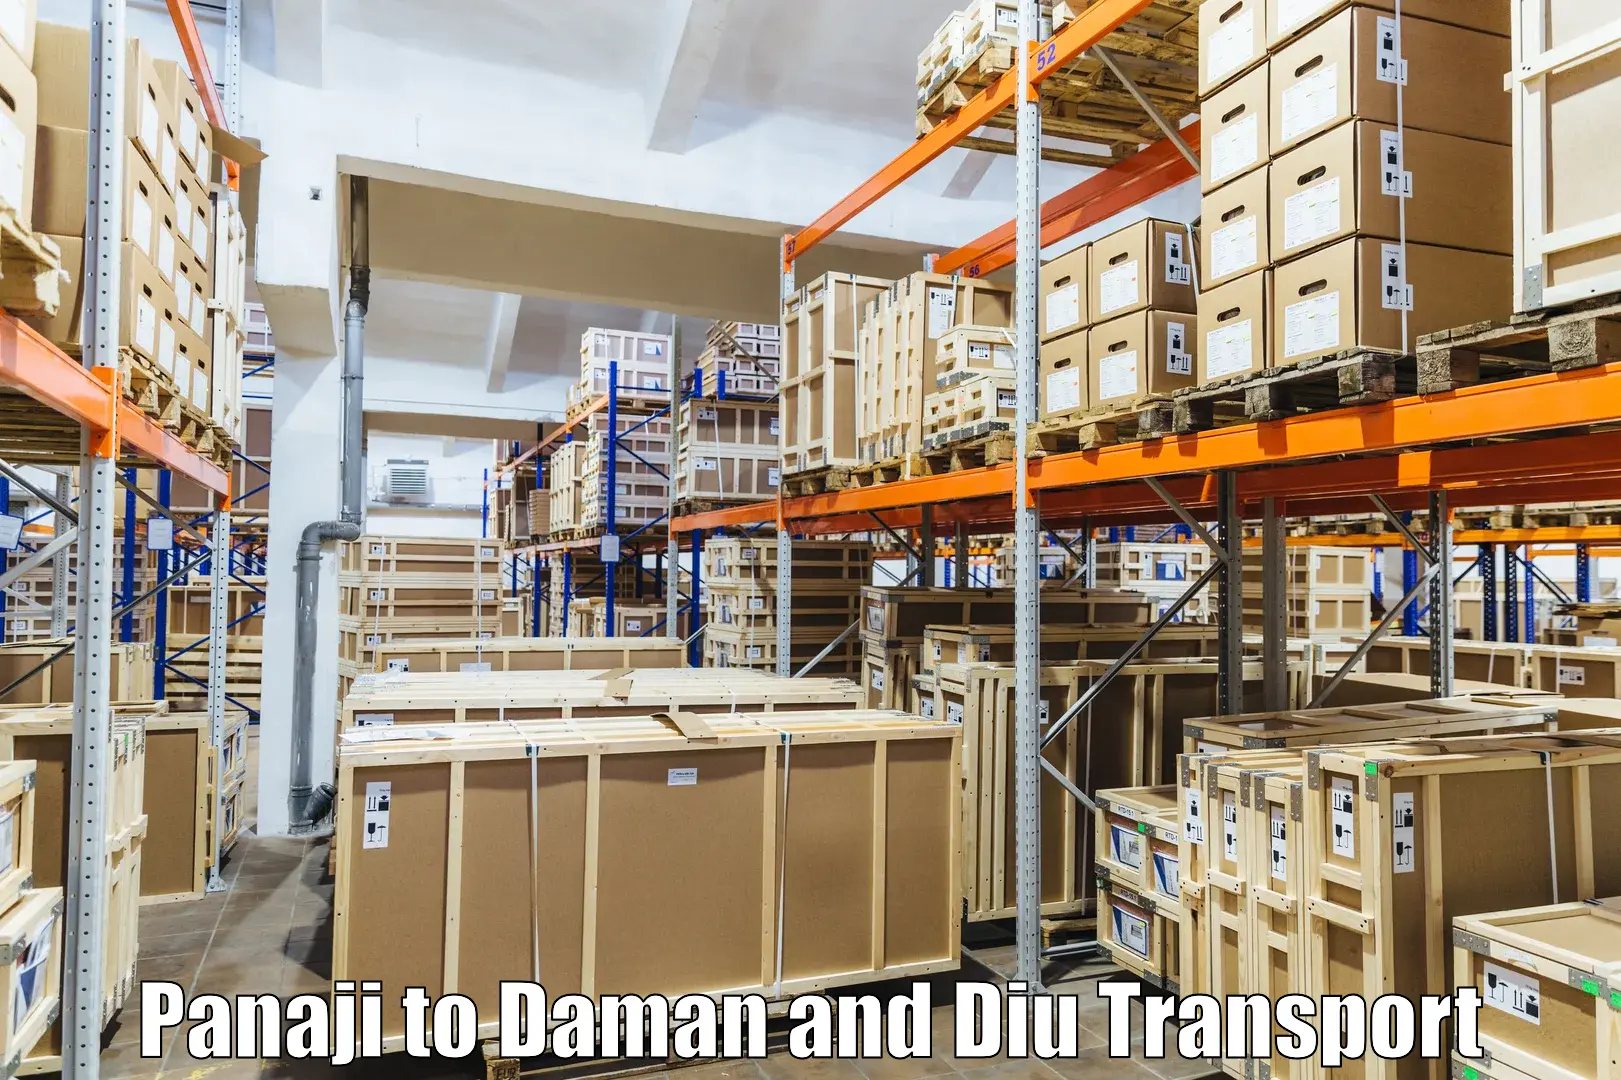 Air freight transport services Panaji to Daman